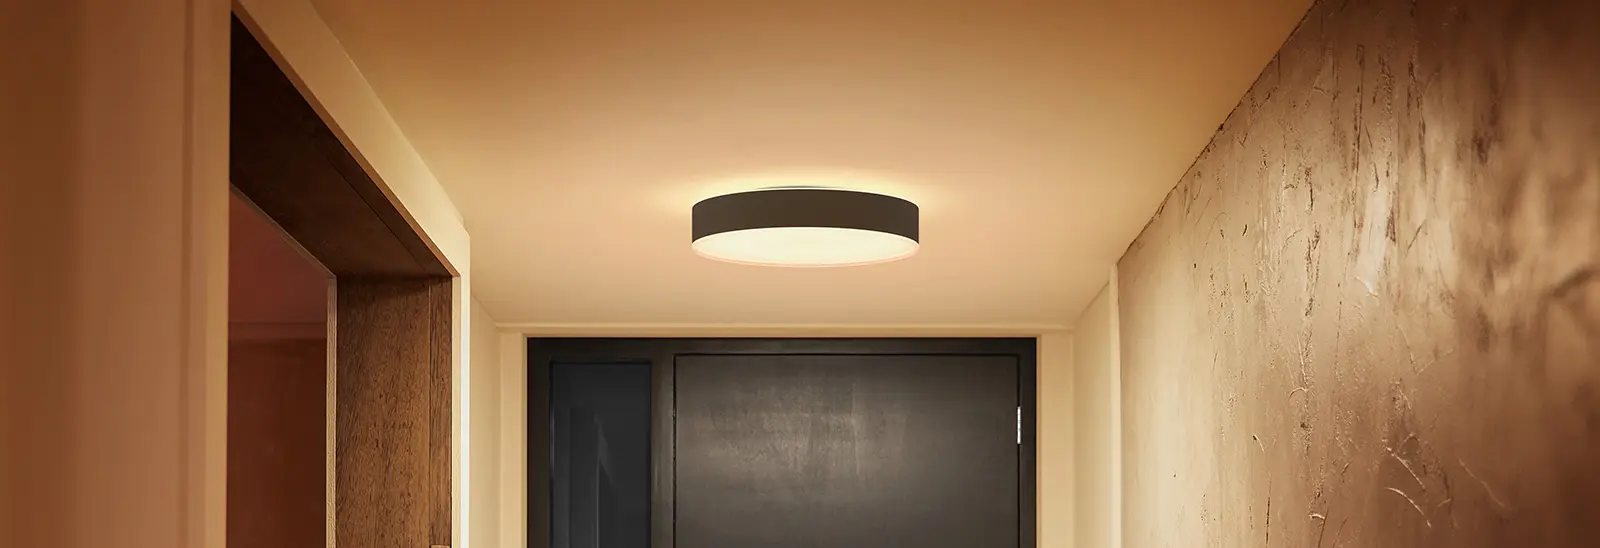 Lampes de plafond pour votre cuisine